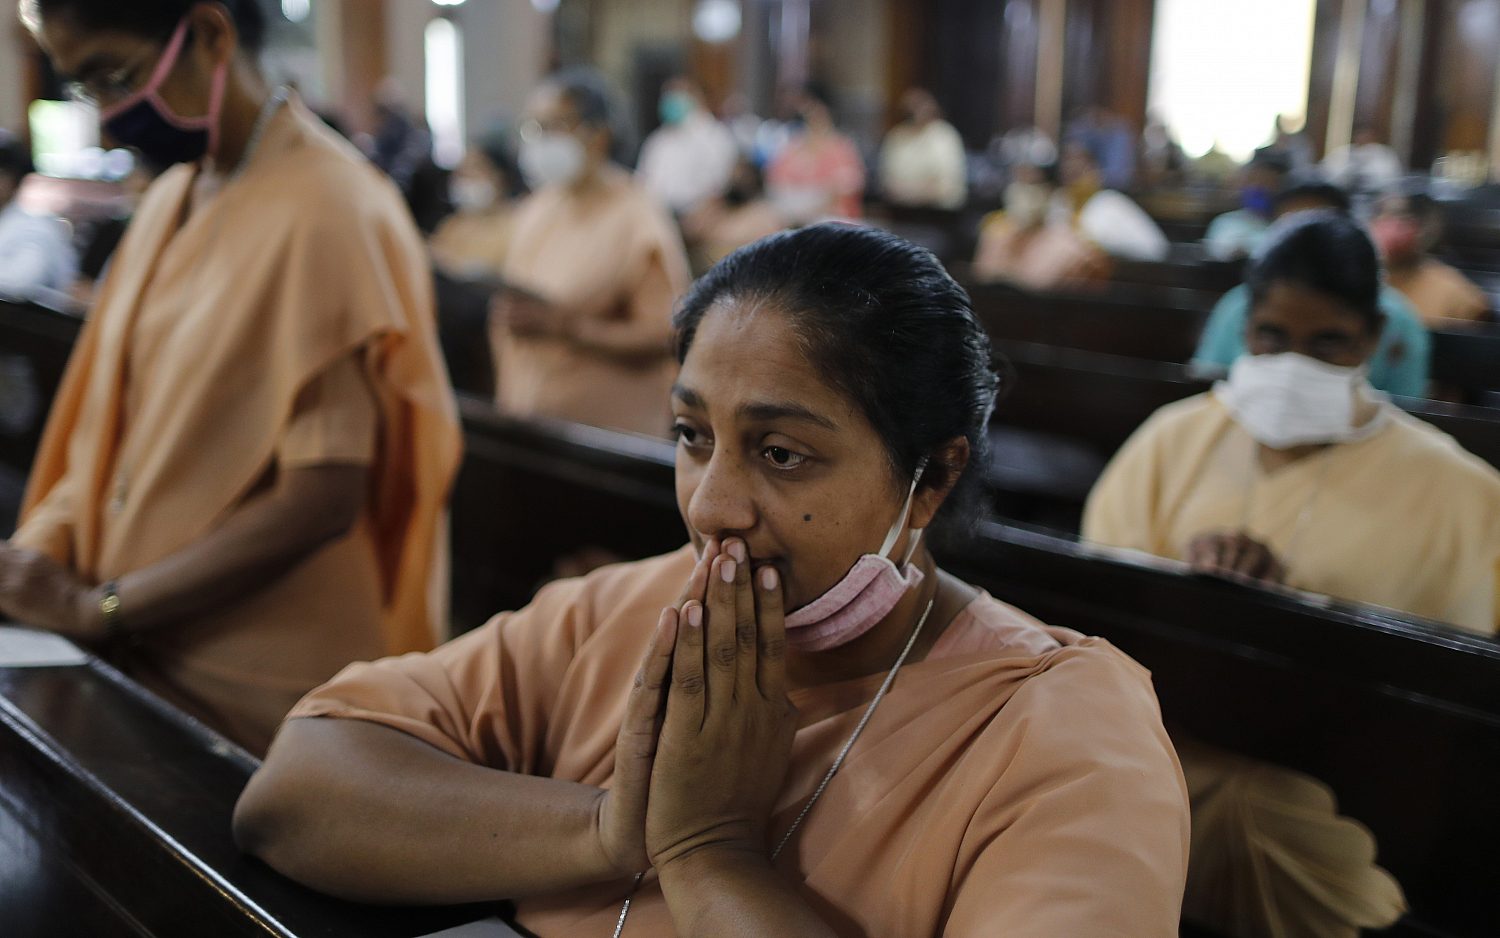 Христианская община атакована в Индии индуистскими экстремистами, причина